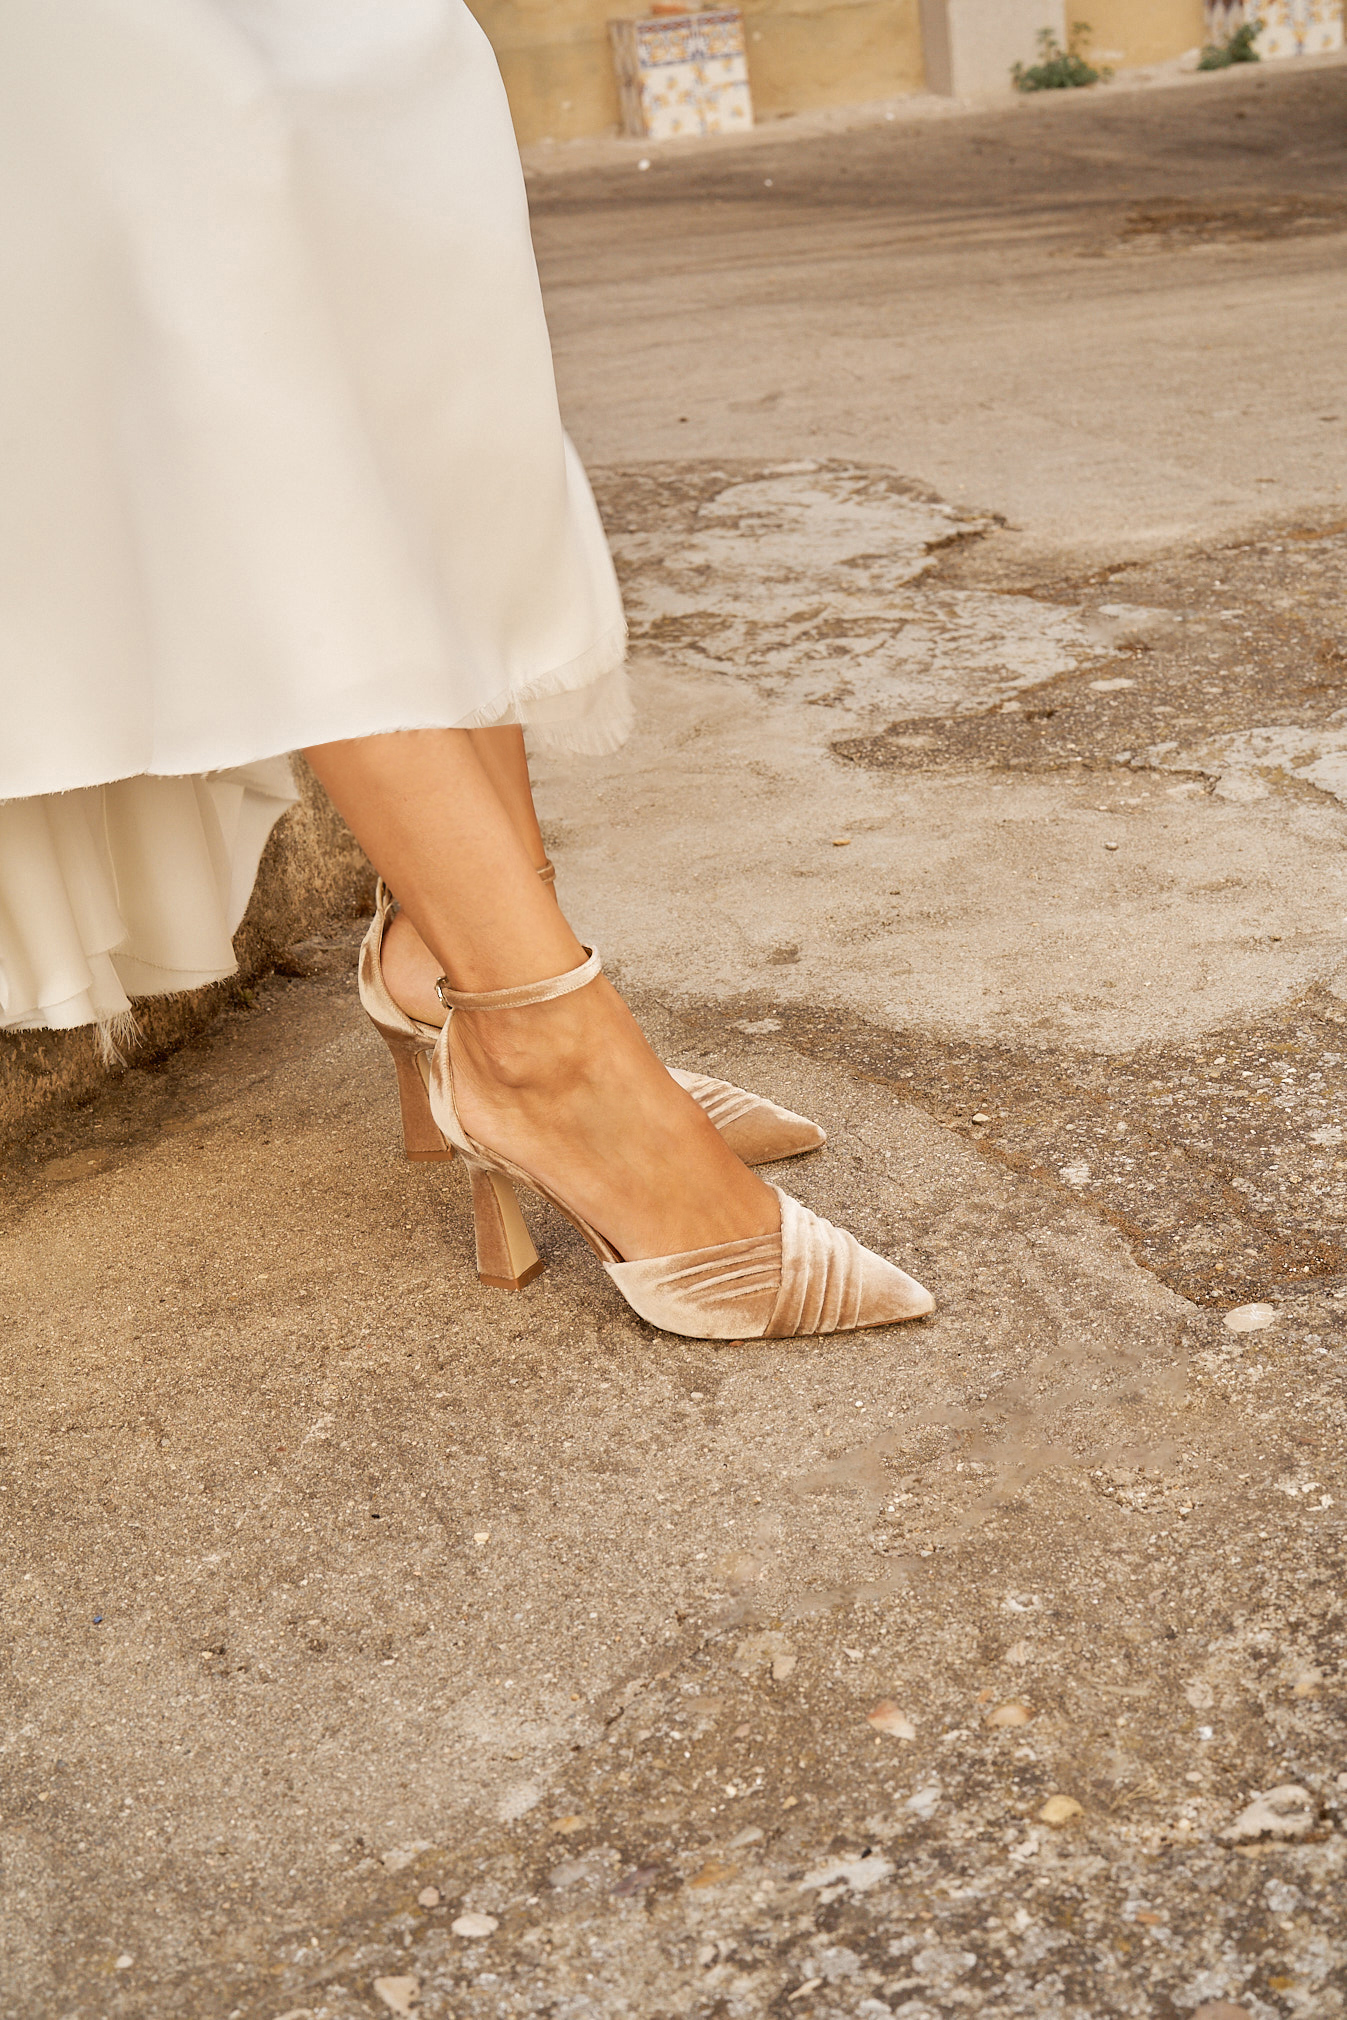 Novia llevando con elegancia el zapato modelo Tilda en color avellana de Flordeasoka, combinando a la perfección con su estilismo nupcial.